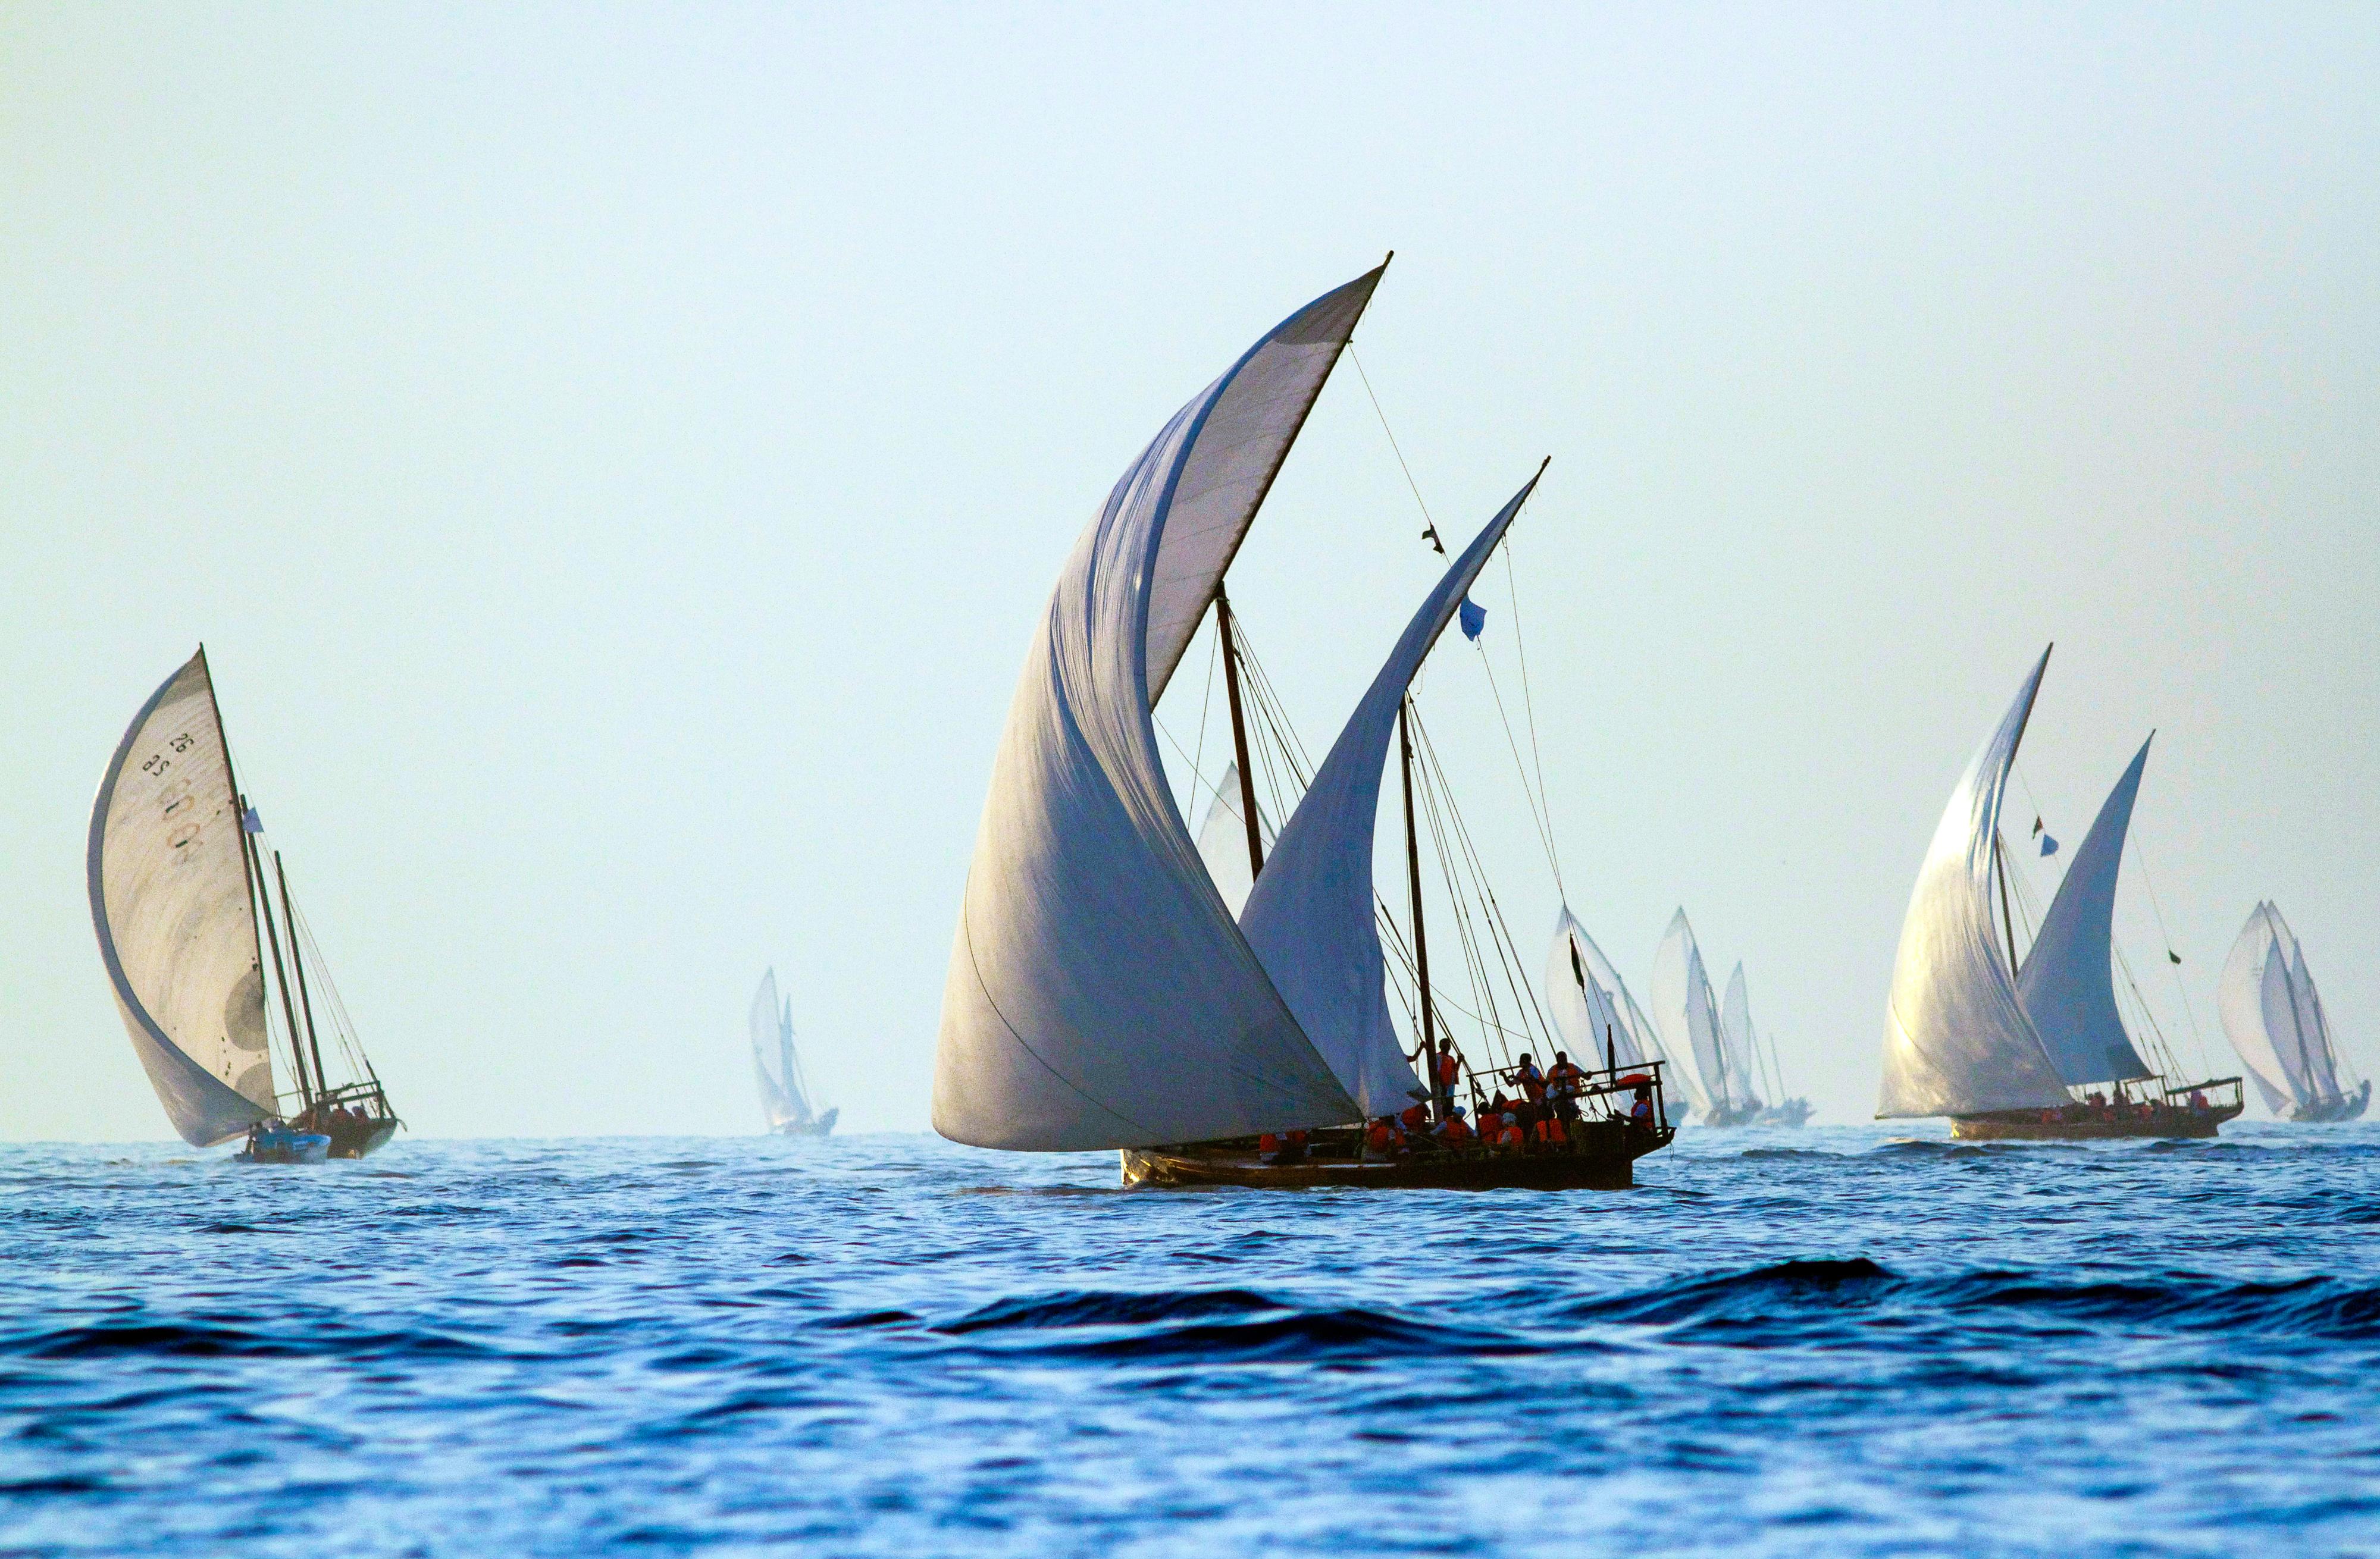 Inspiration
Die Dhow-Möbel sind eine Anspielung auf die geblähten Segel der traditionellen omanischen Boote, die ein wichtiger Teil der maritimen Geschichte des Landes sind.

Handwerkskunst
Bethan hat die Bewegung der Segel in einem handgezeichneten